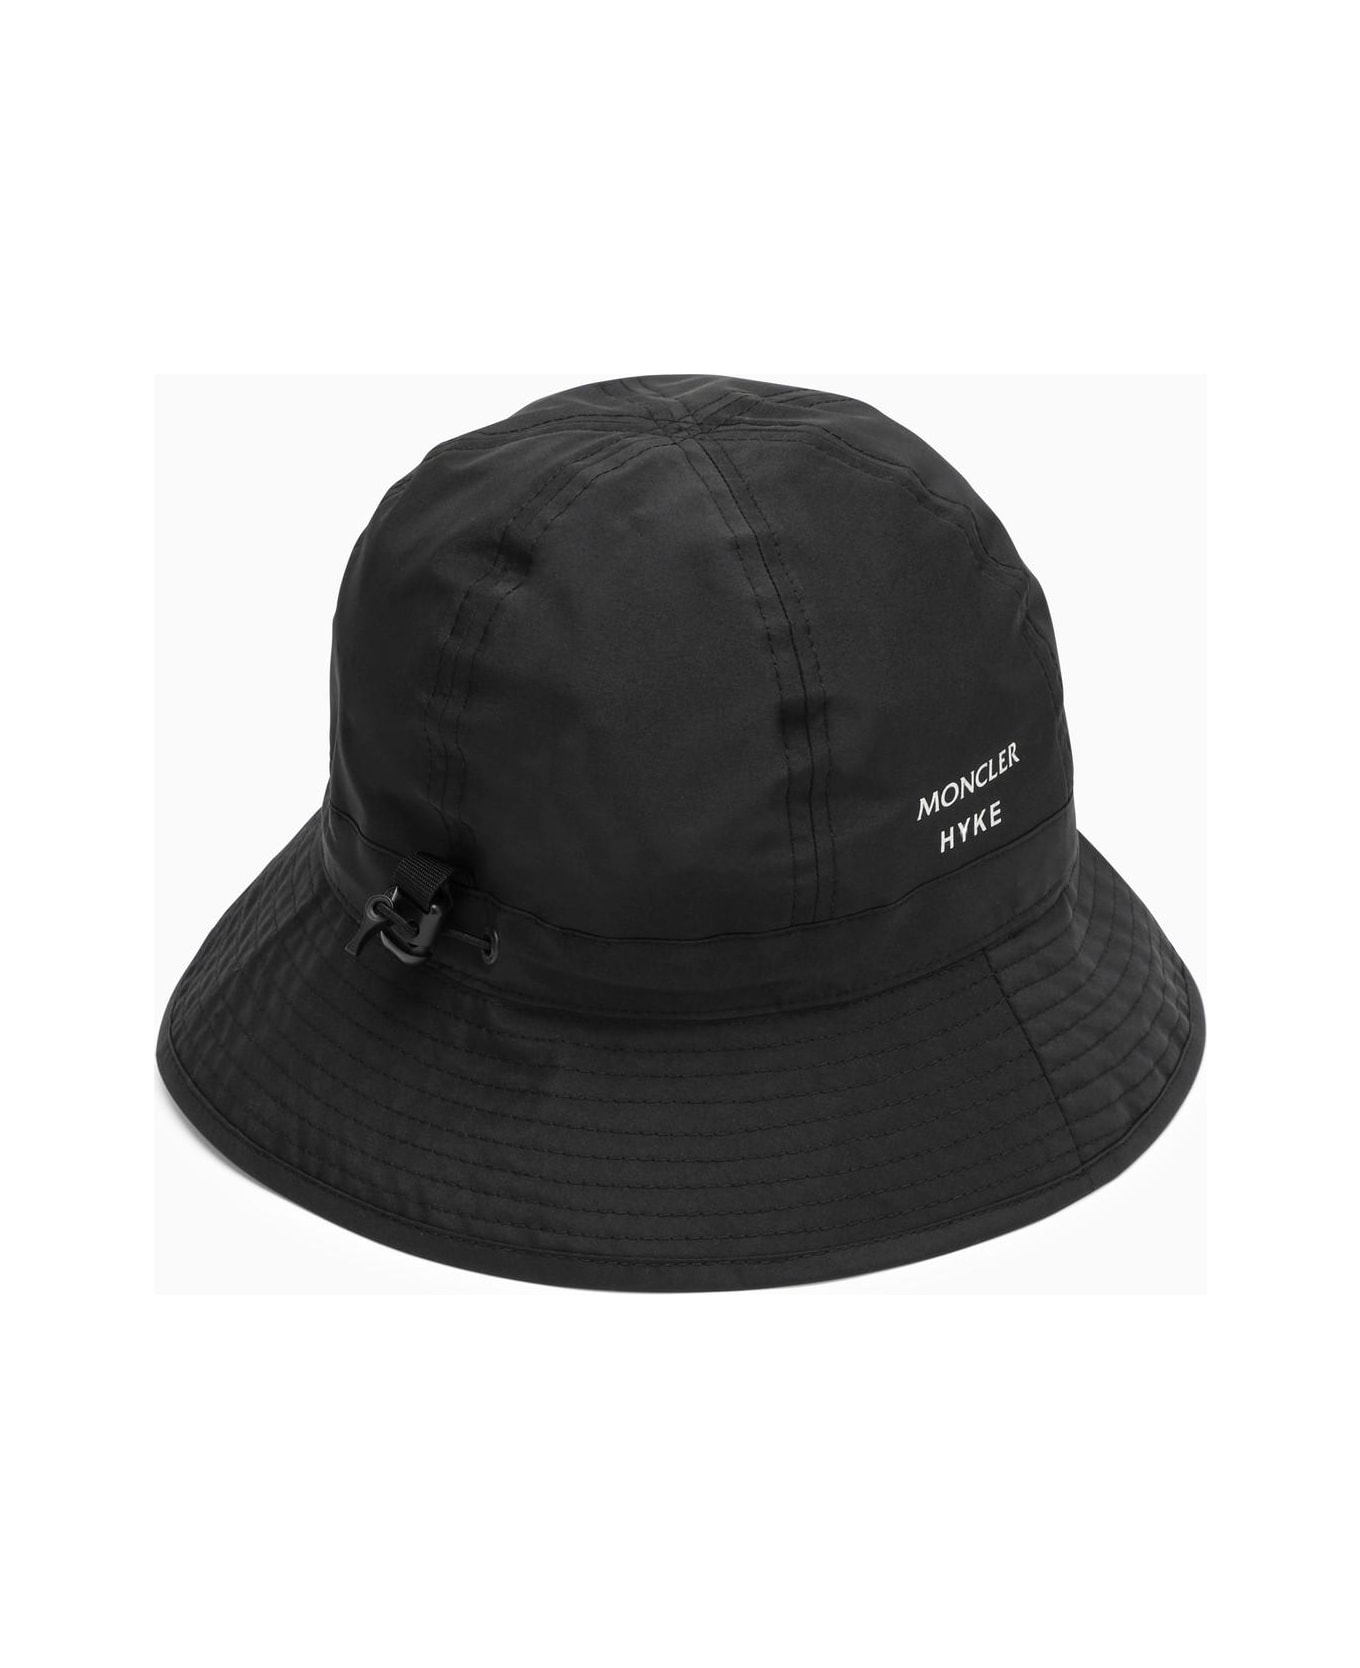 Moncler Genius Nylon Black Hat - Nero